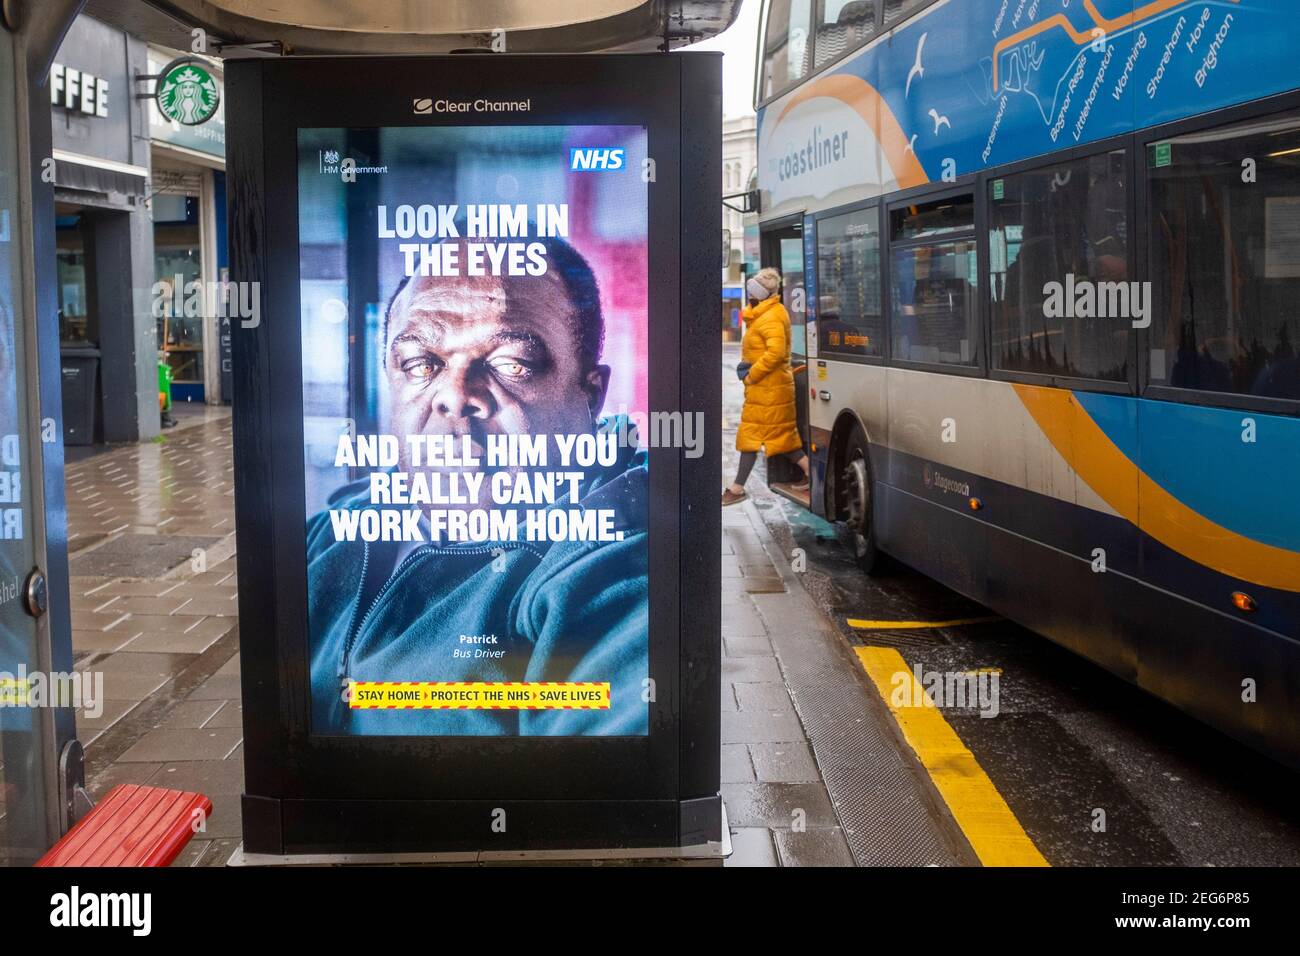 Gouvernement britannique NHS coronavirus COVID-19 les regarder dans les yeux Affiche de campagne de santé à un arrêt de bus à Brighton, Royaume-Uni Banque D'Images